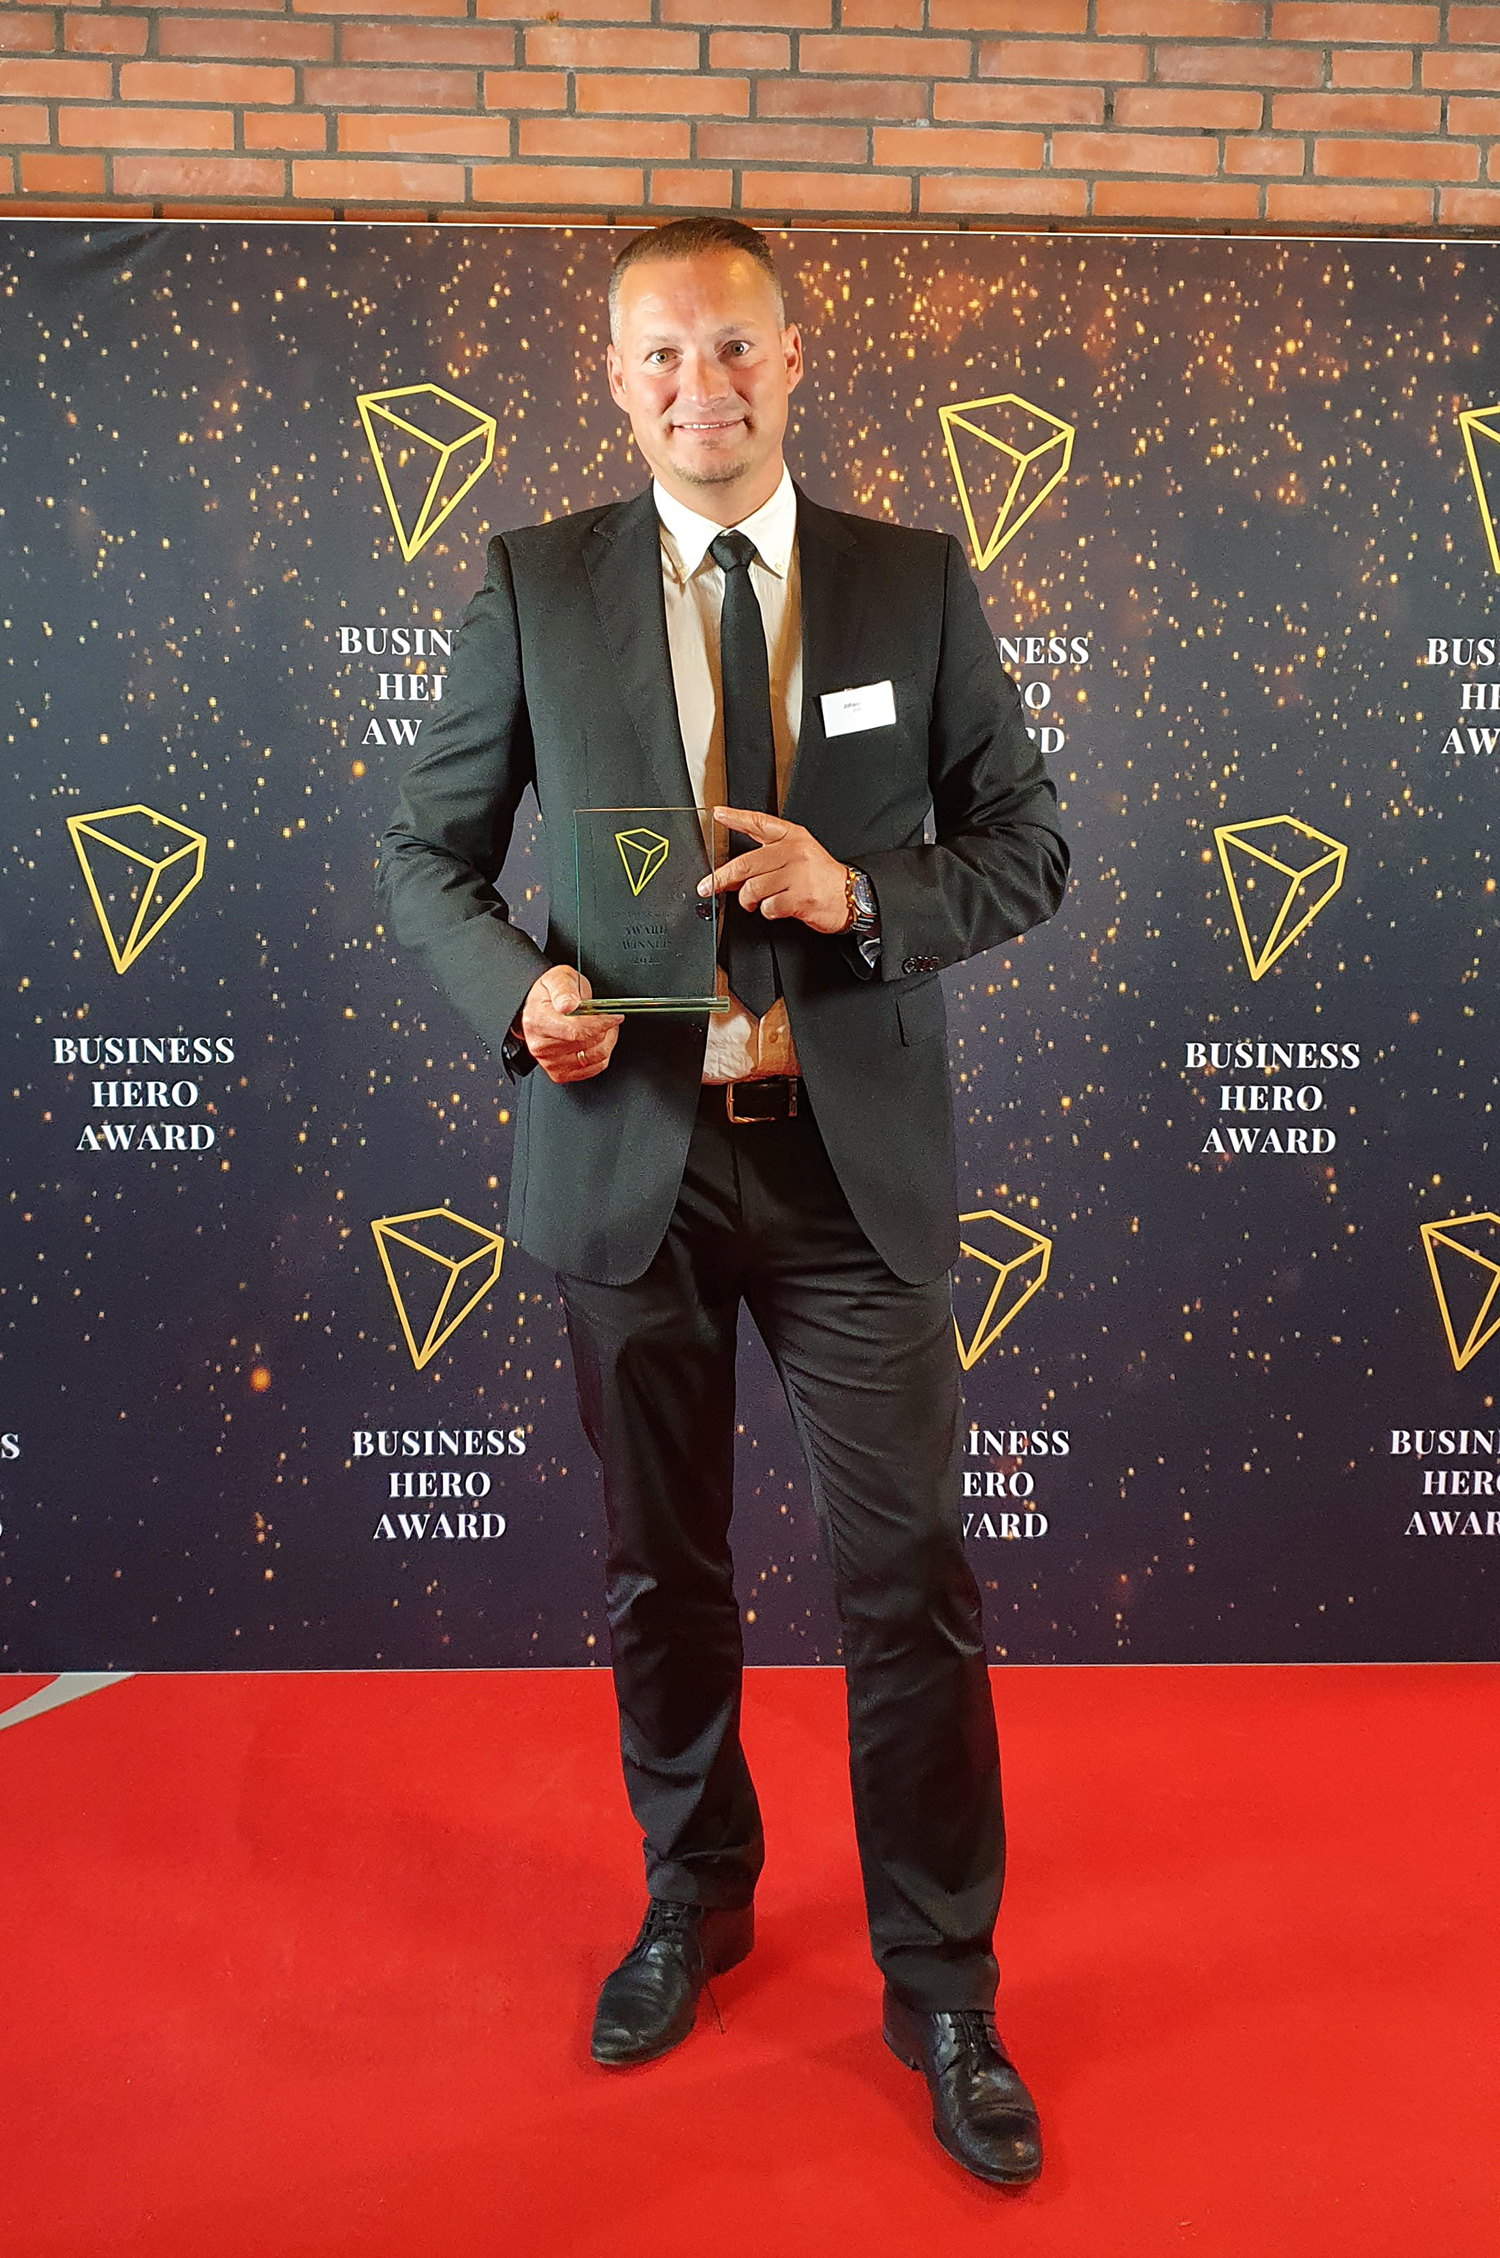 EWM mit Business Hero Award ausgezeichnet